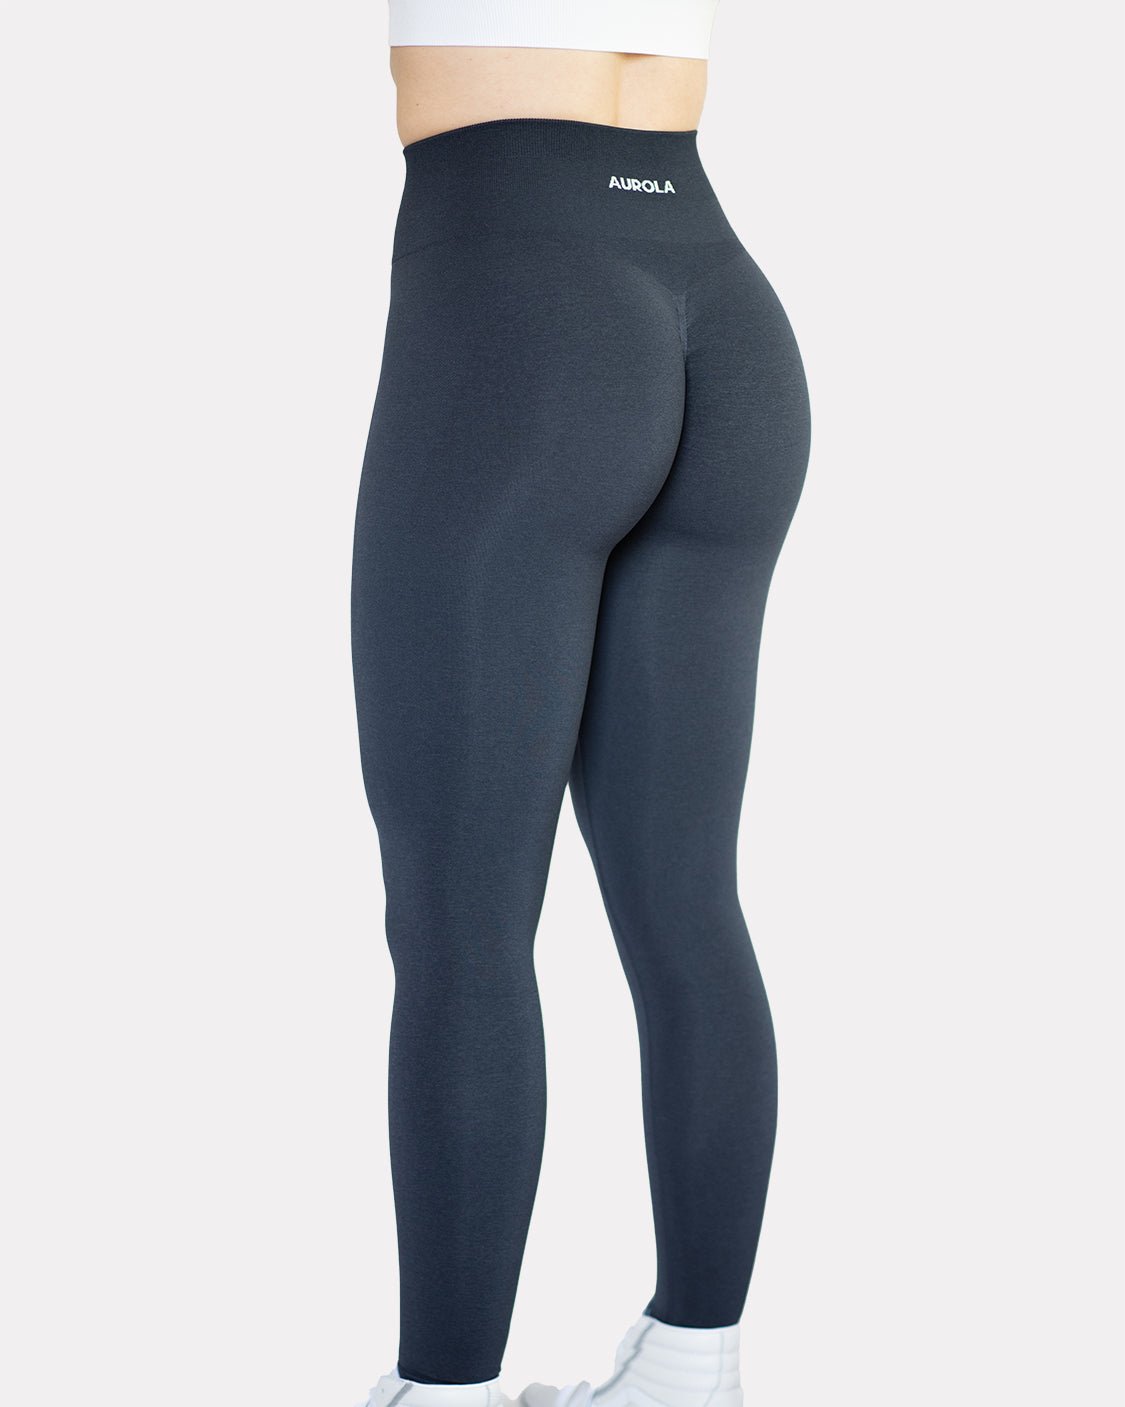 10/10 Booty in aurola leggings 🍑🤌🏽 - Spandex, Leggings & Yoga